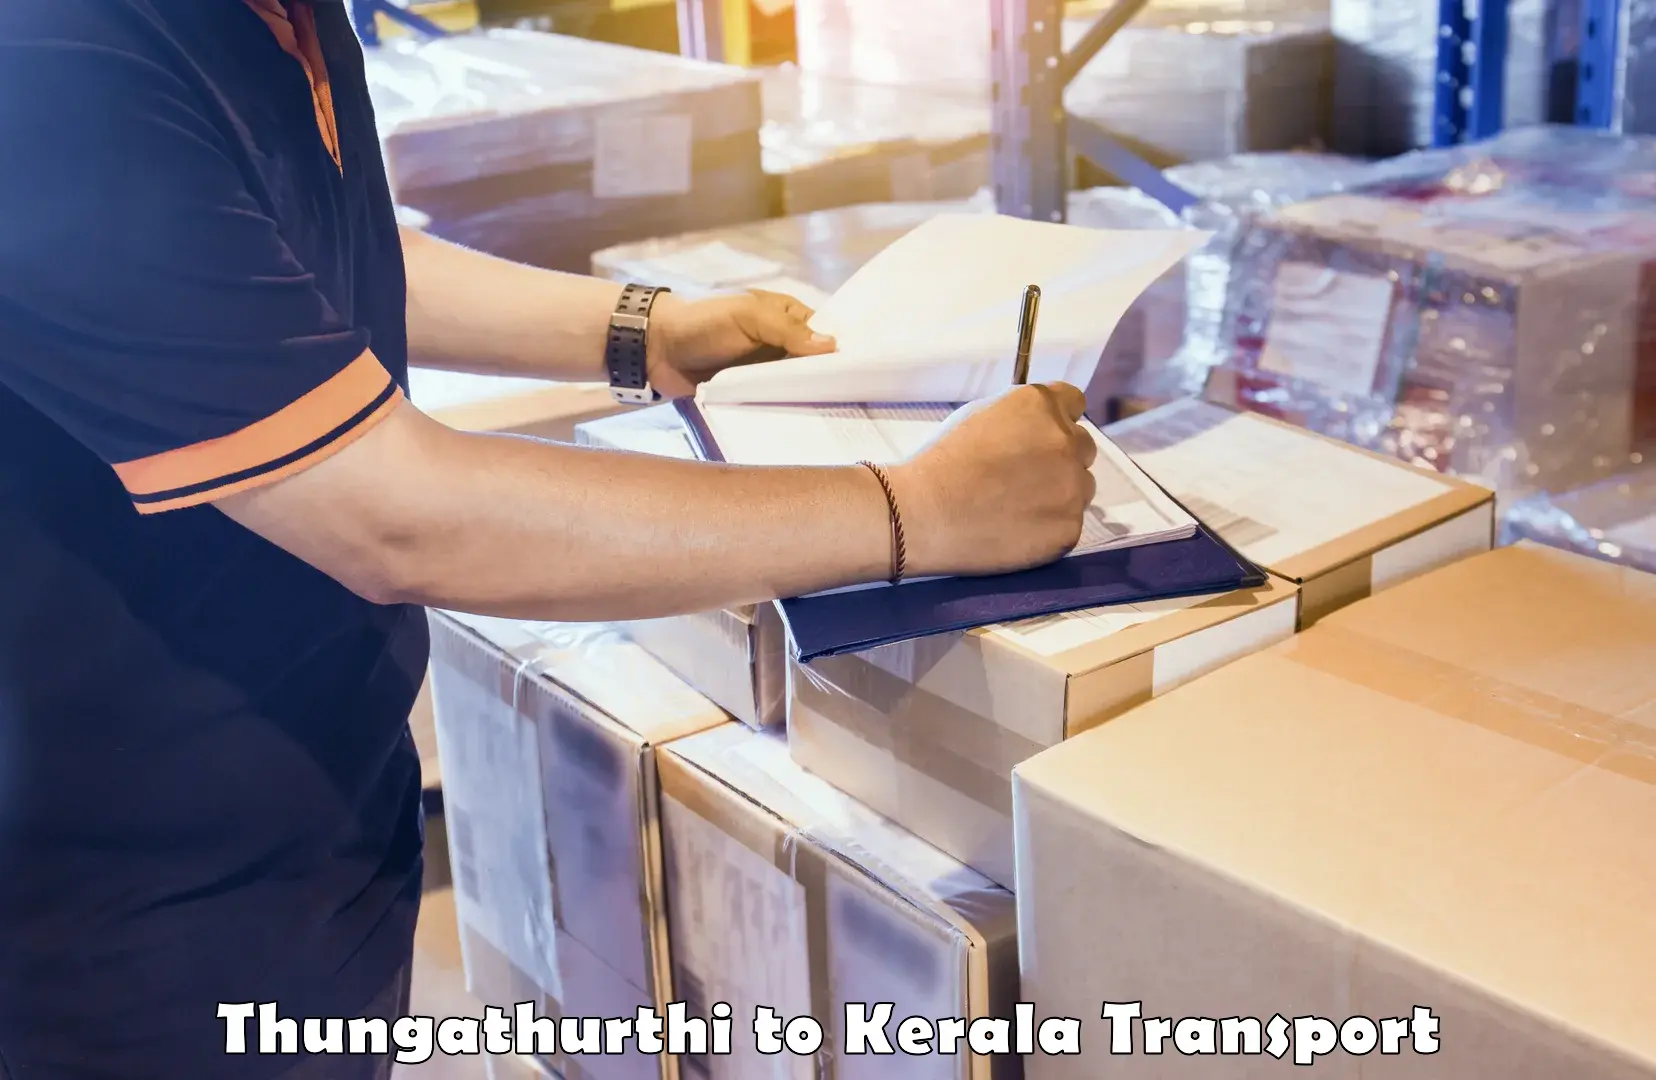 Cargo train transport services Thungathurthi to Pala